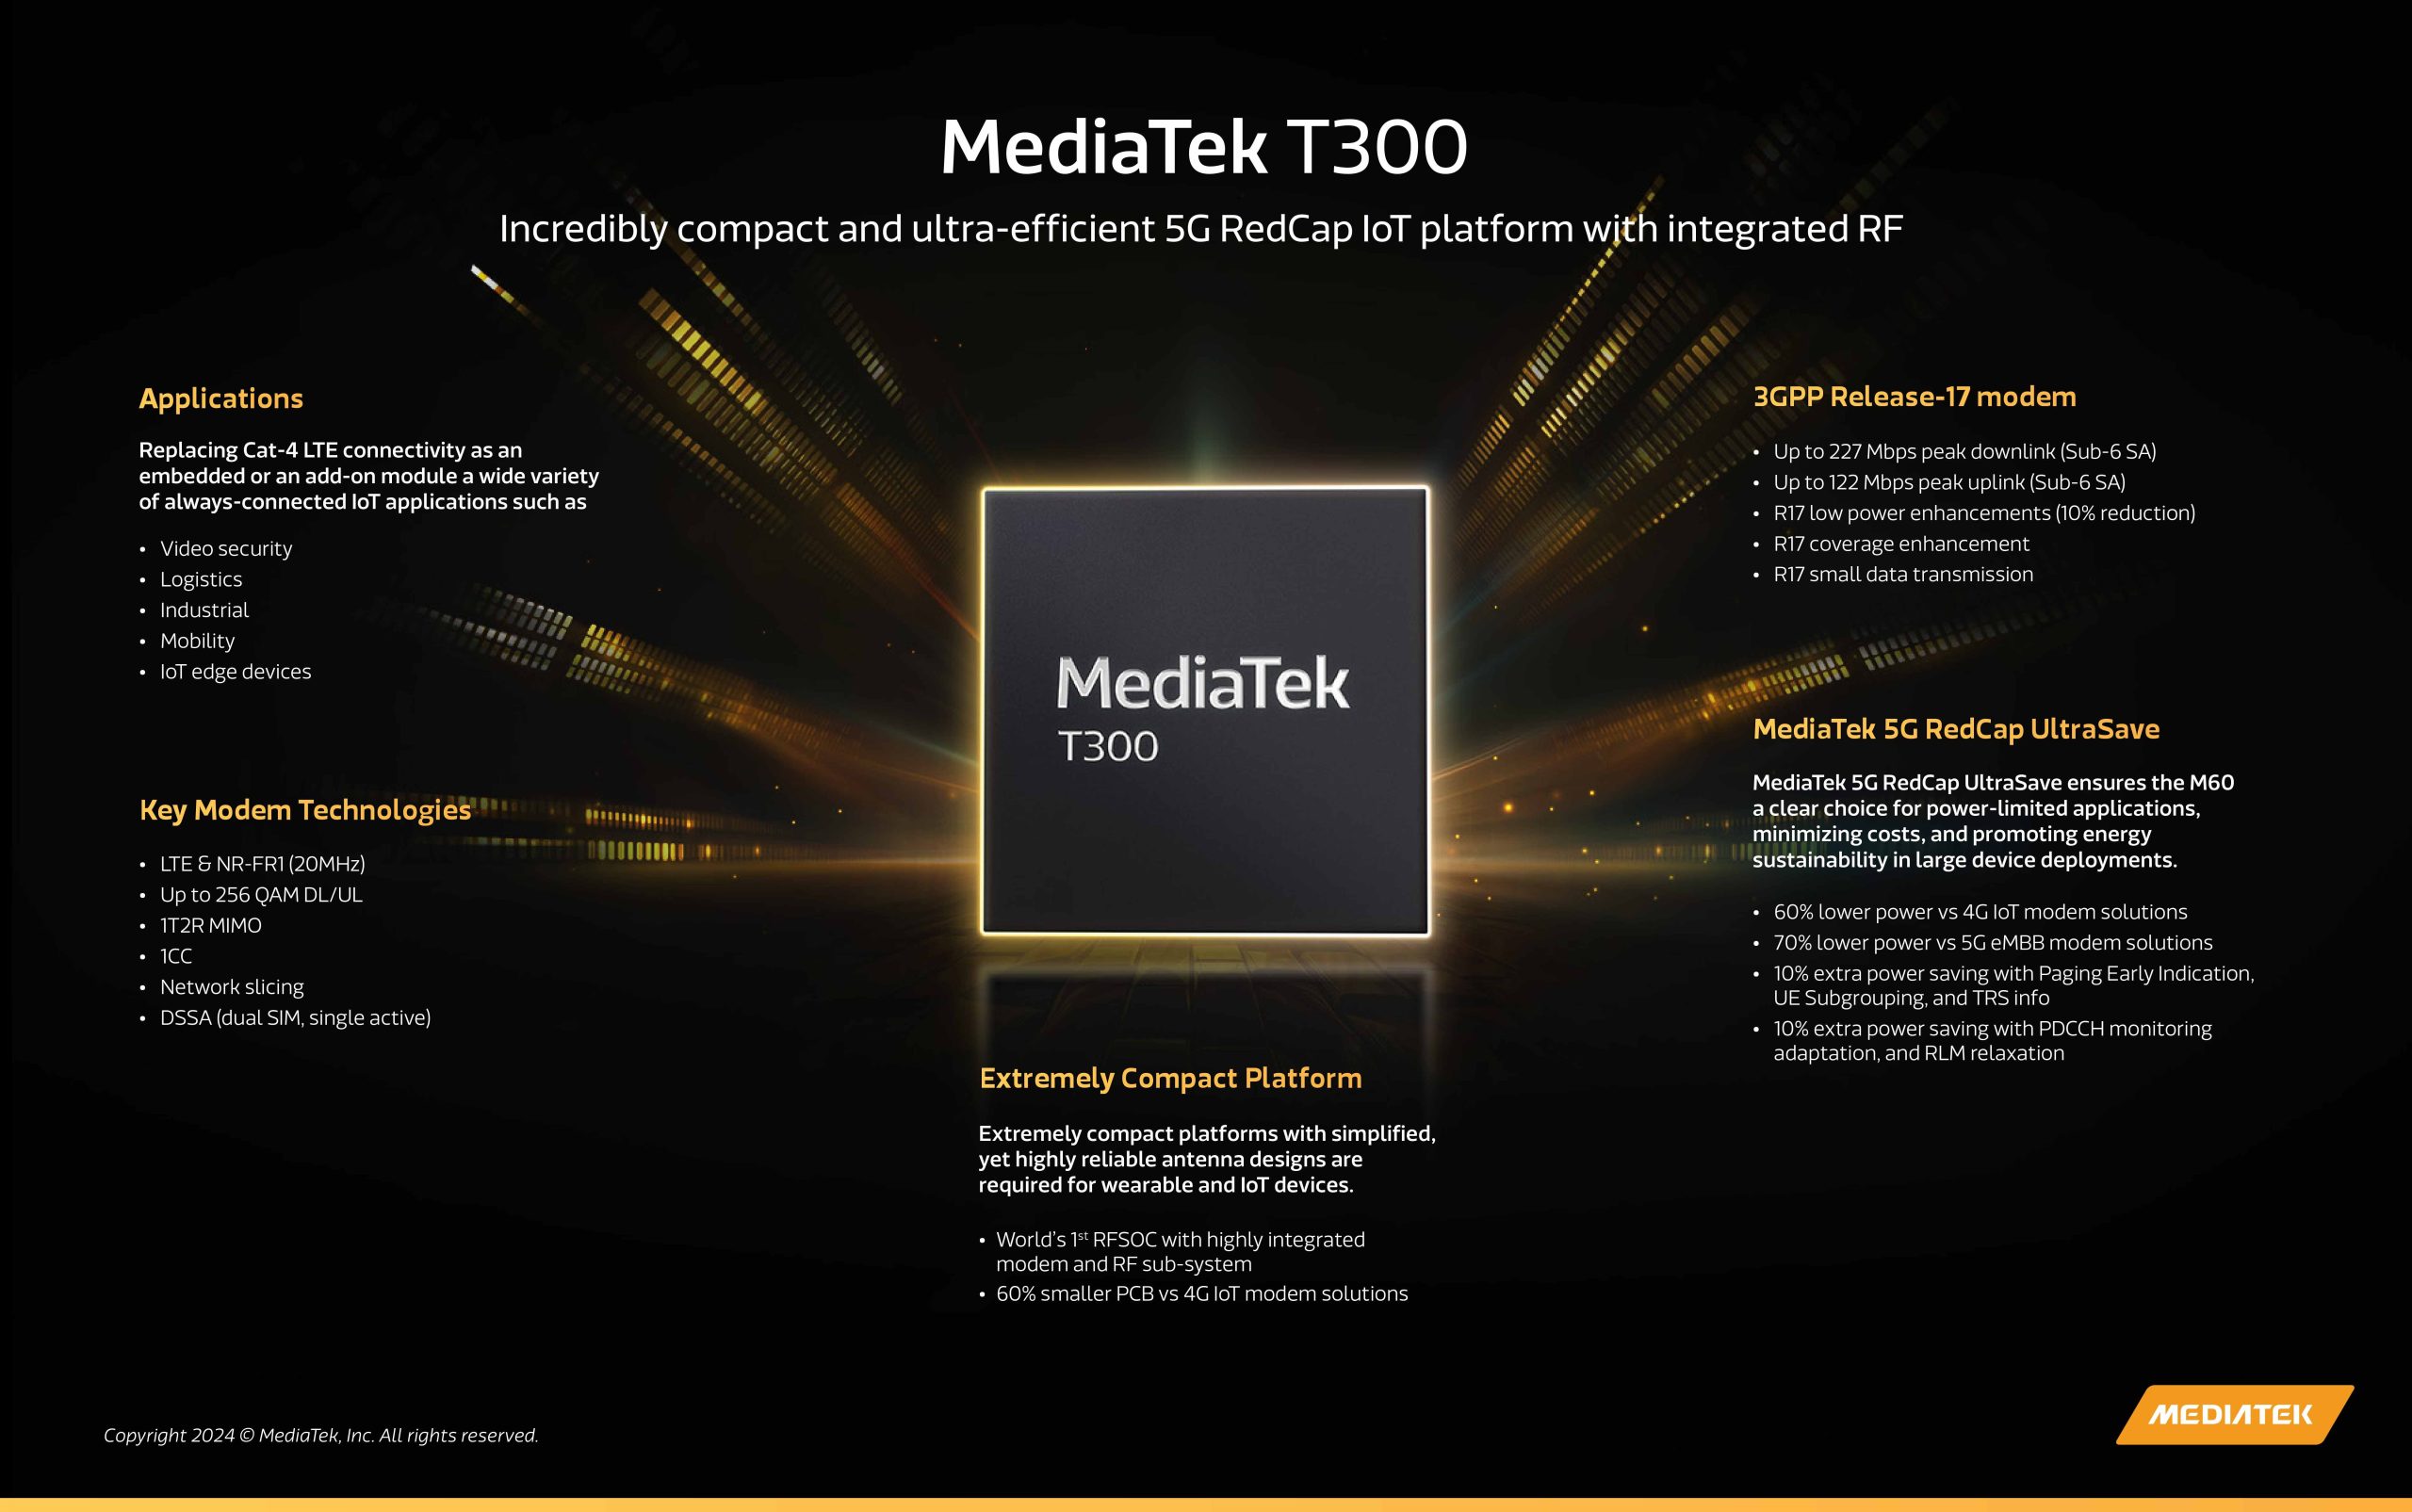 MediaTek T300: Features